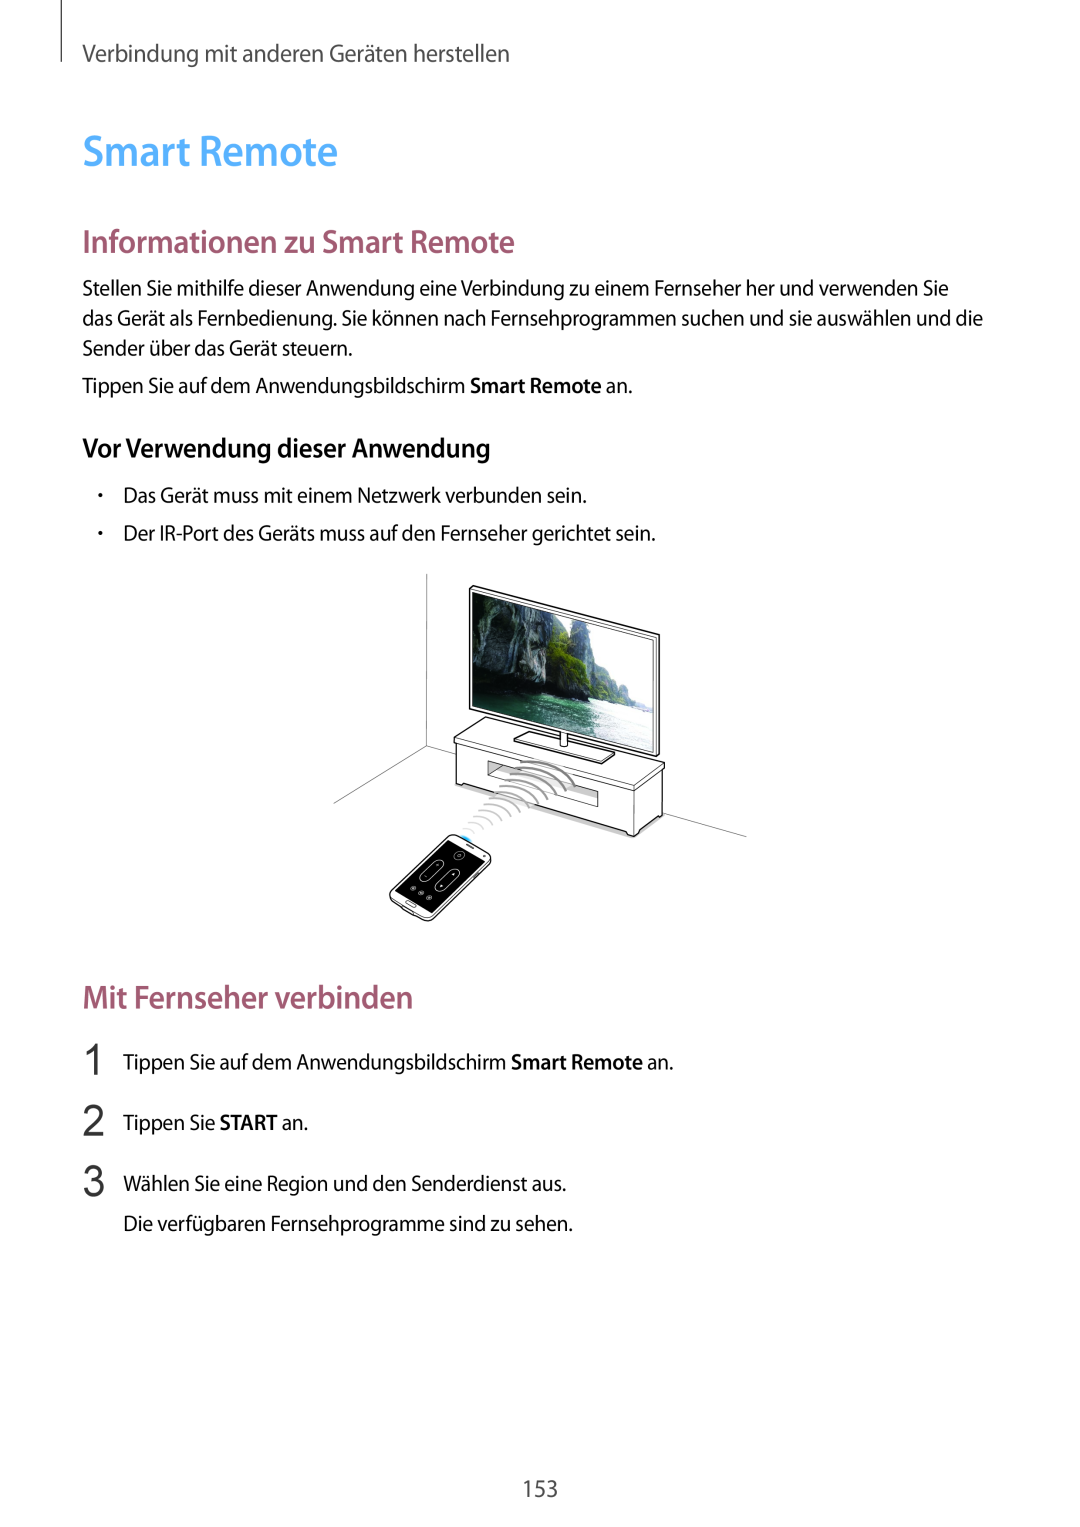 Samsung SM-G901FZKACOS manual Informationen zu Smart Remote, Vor Verwendung dieser Anwendung, Mit Fernseher verbinden 